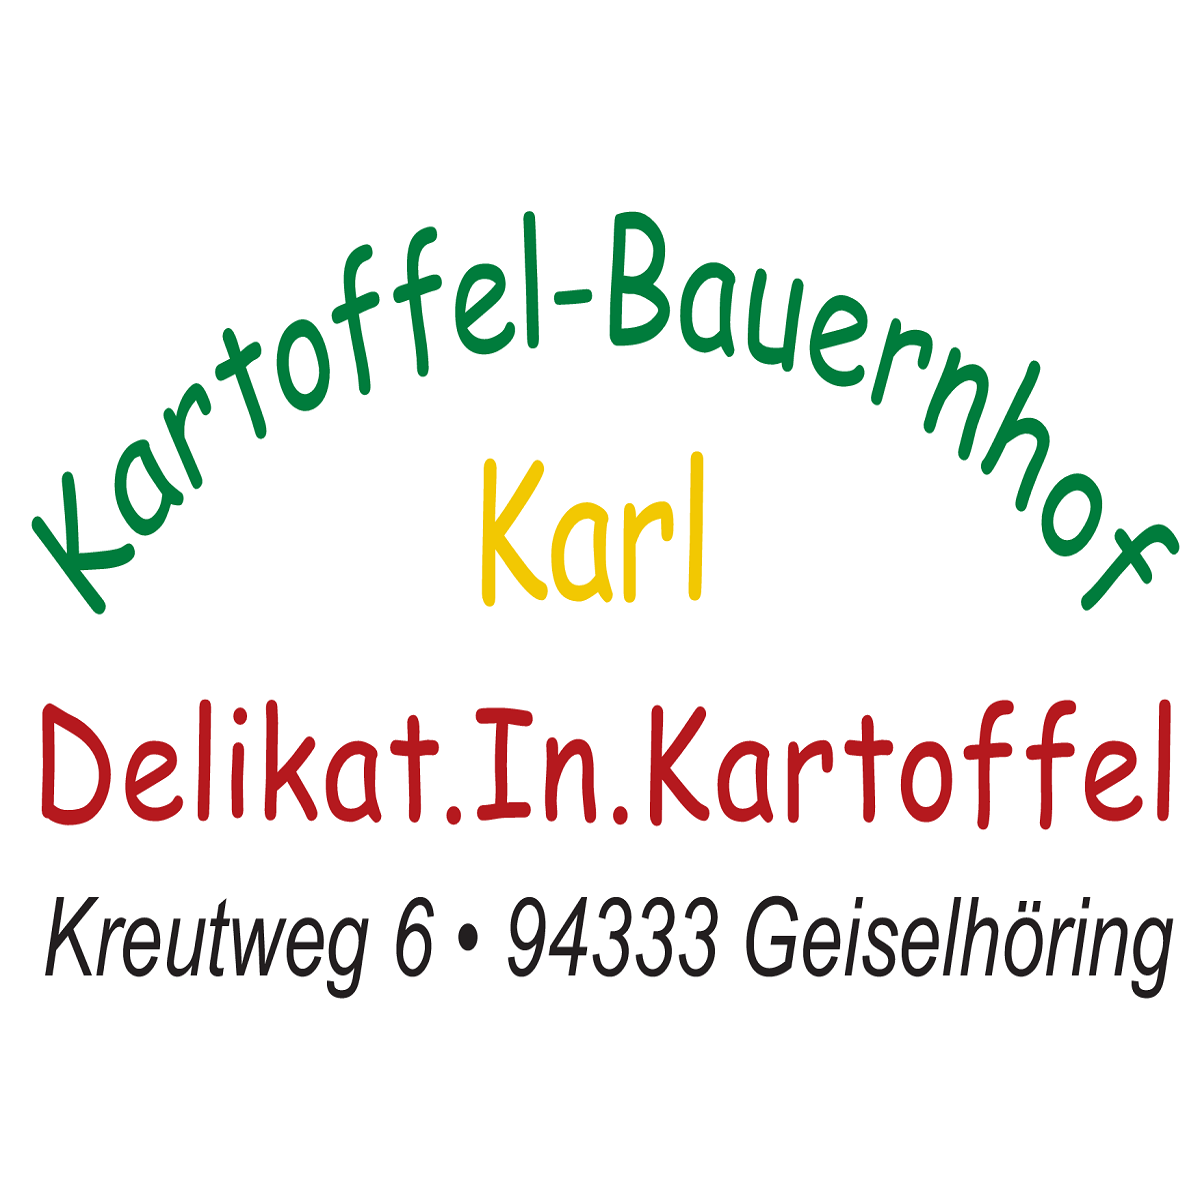 Kartoffel-Bauernhof Hubert Karl